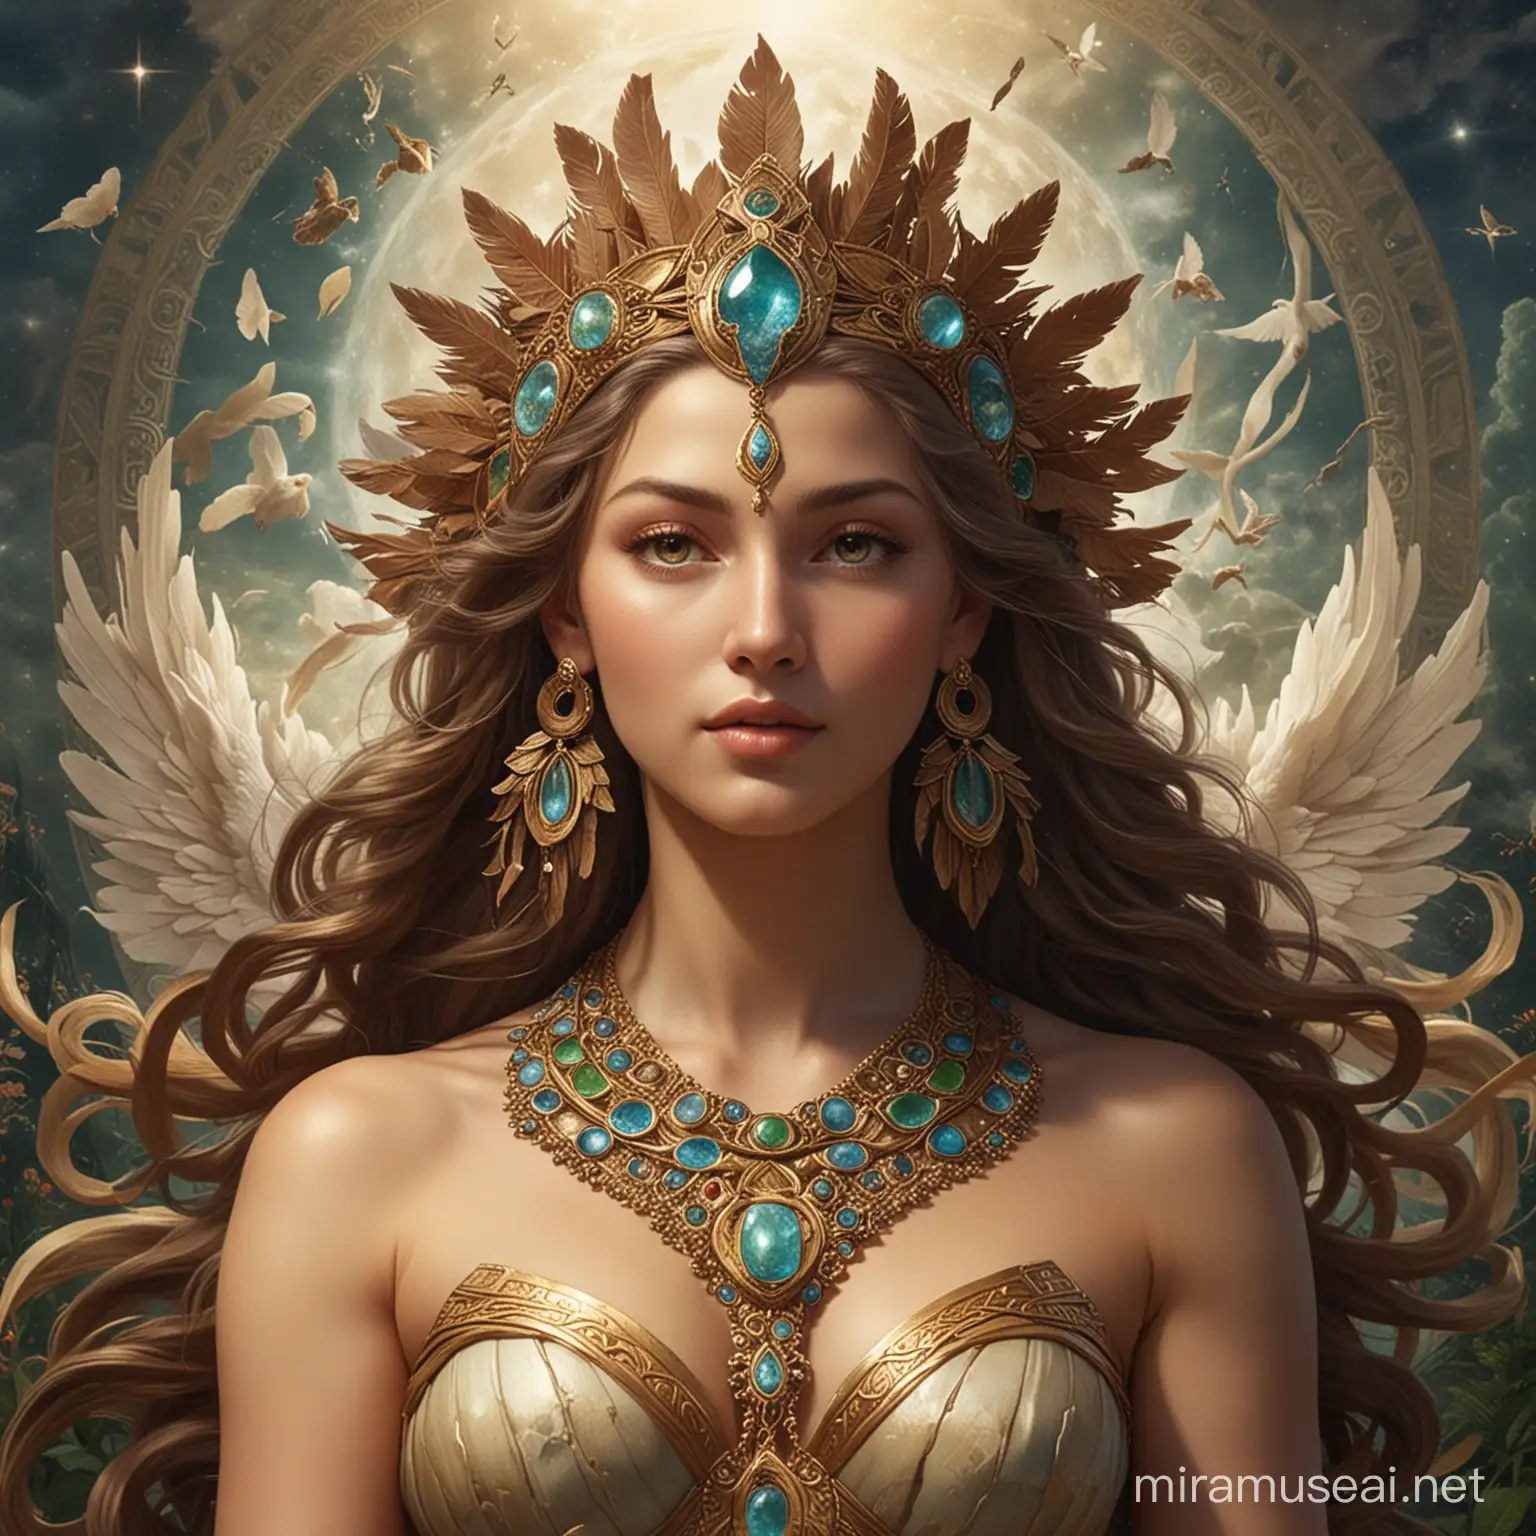 Goddess of the Earth Enveloped in Verdant Serenity